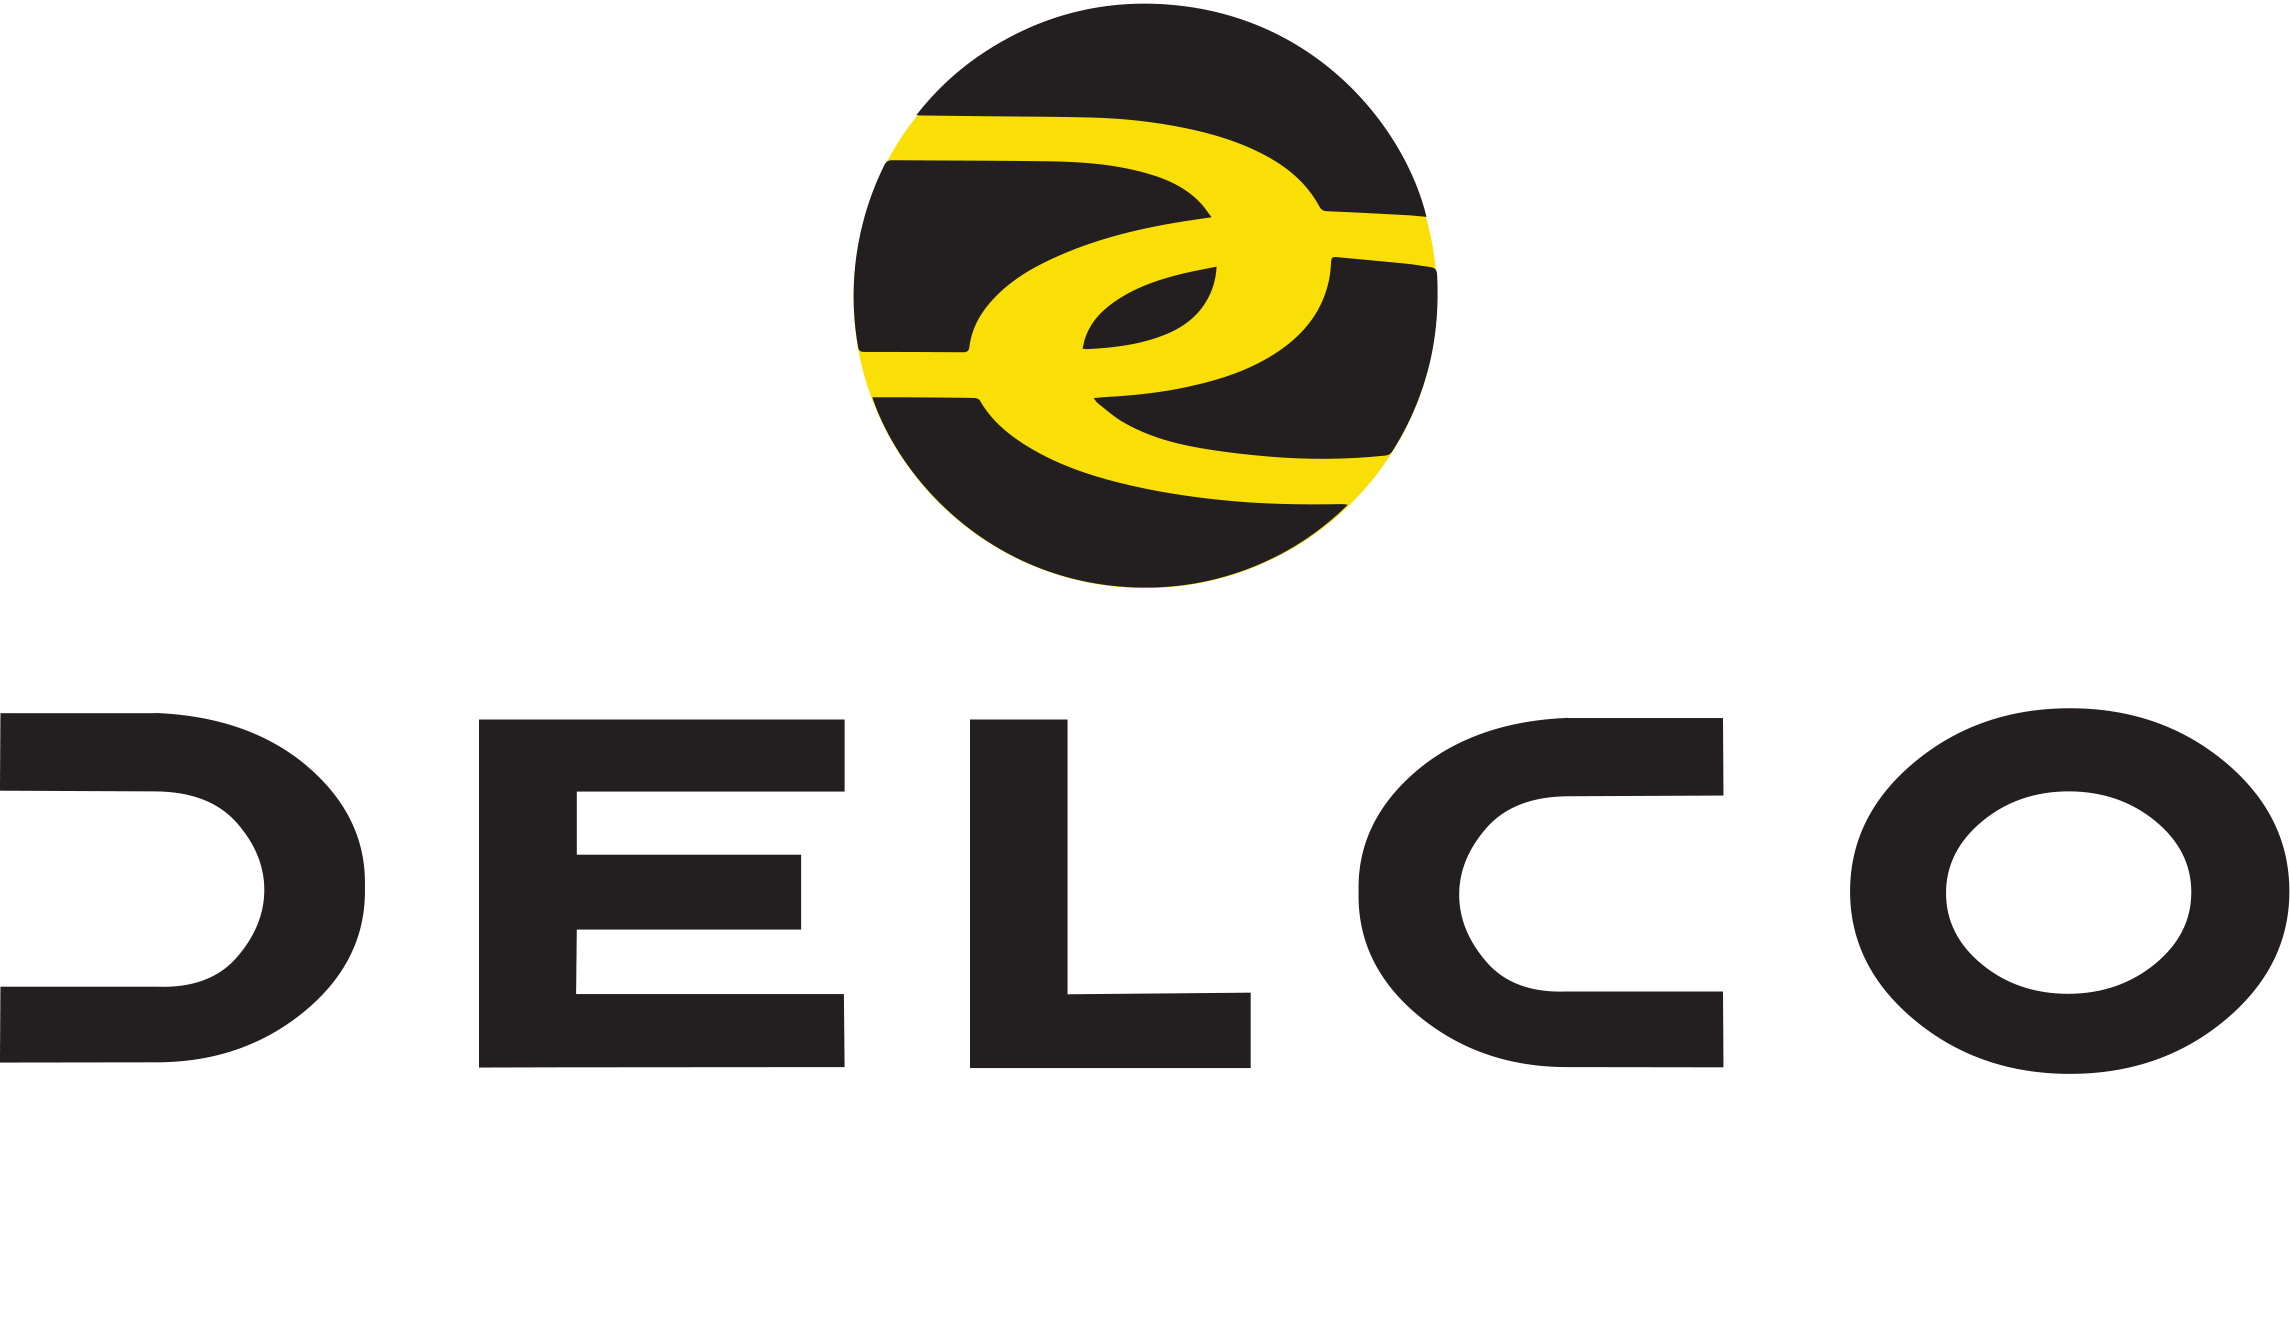 Delco Logo - Home